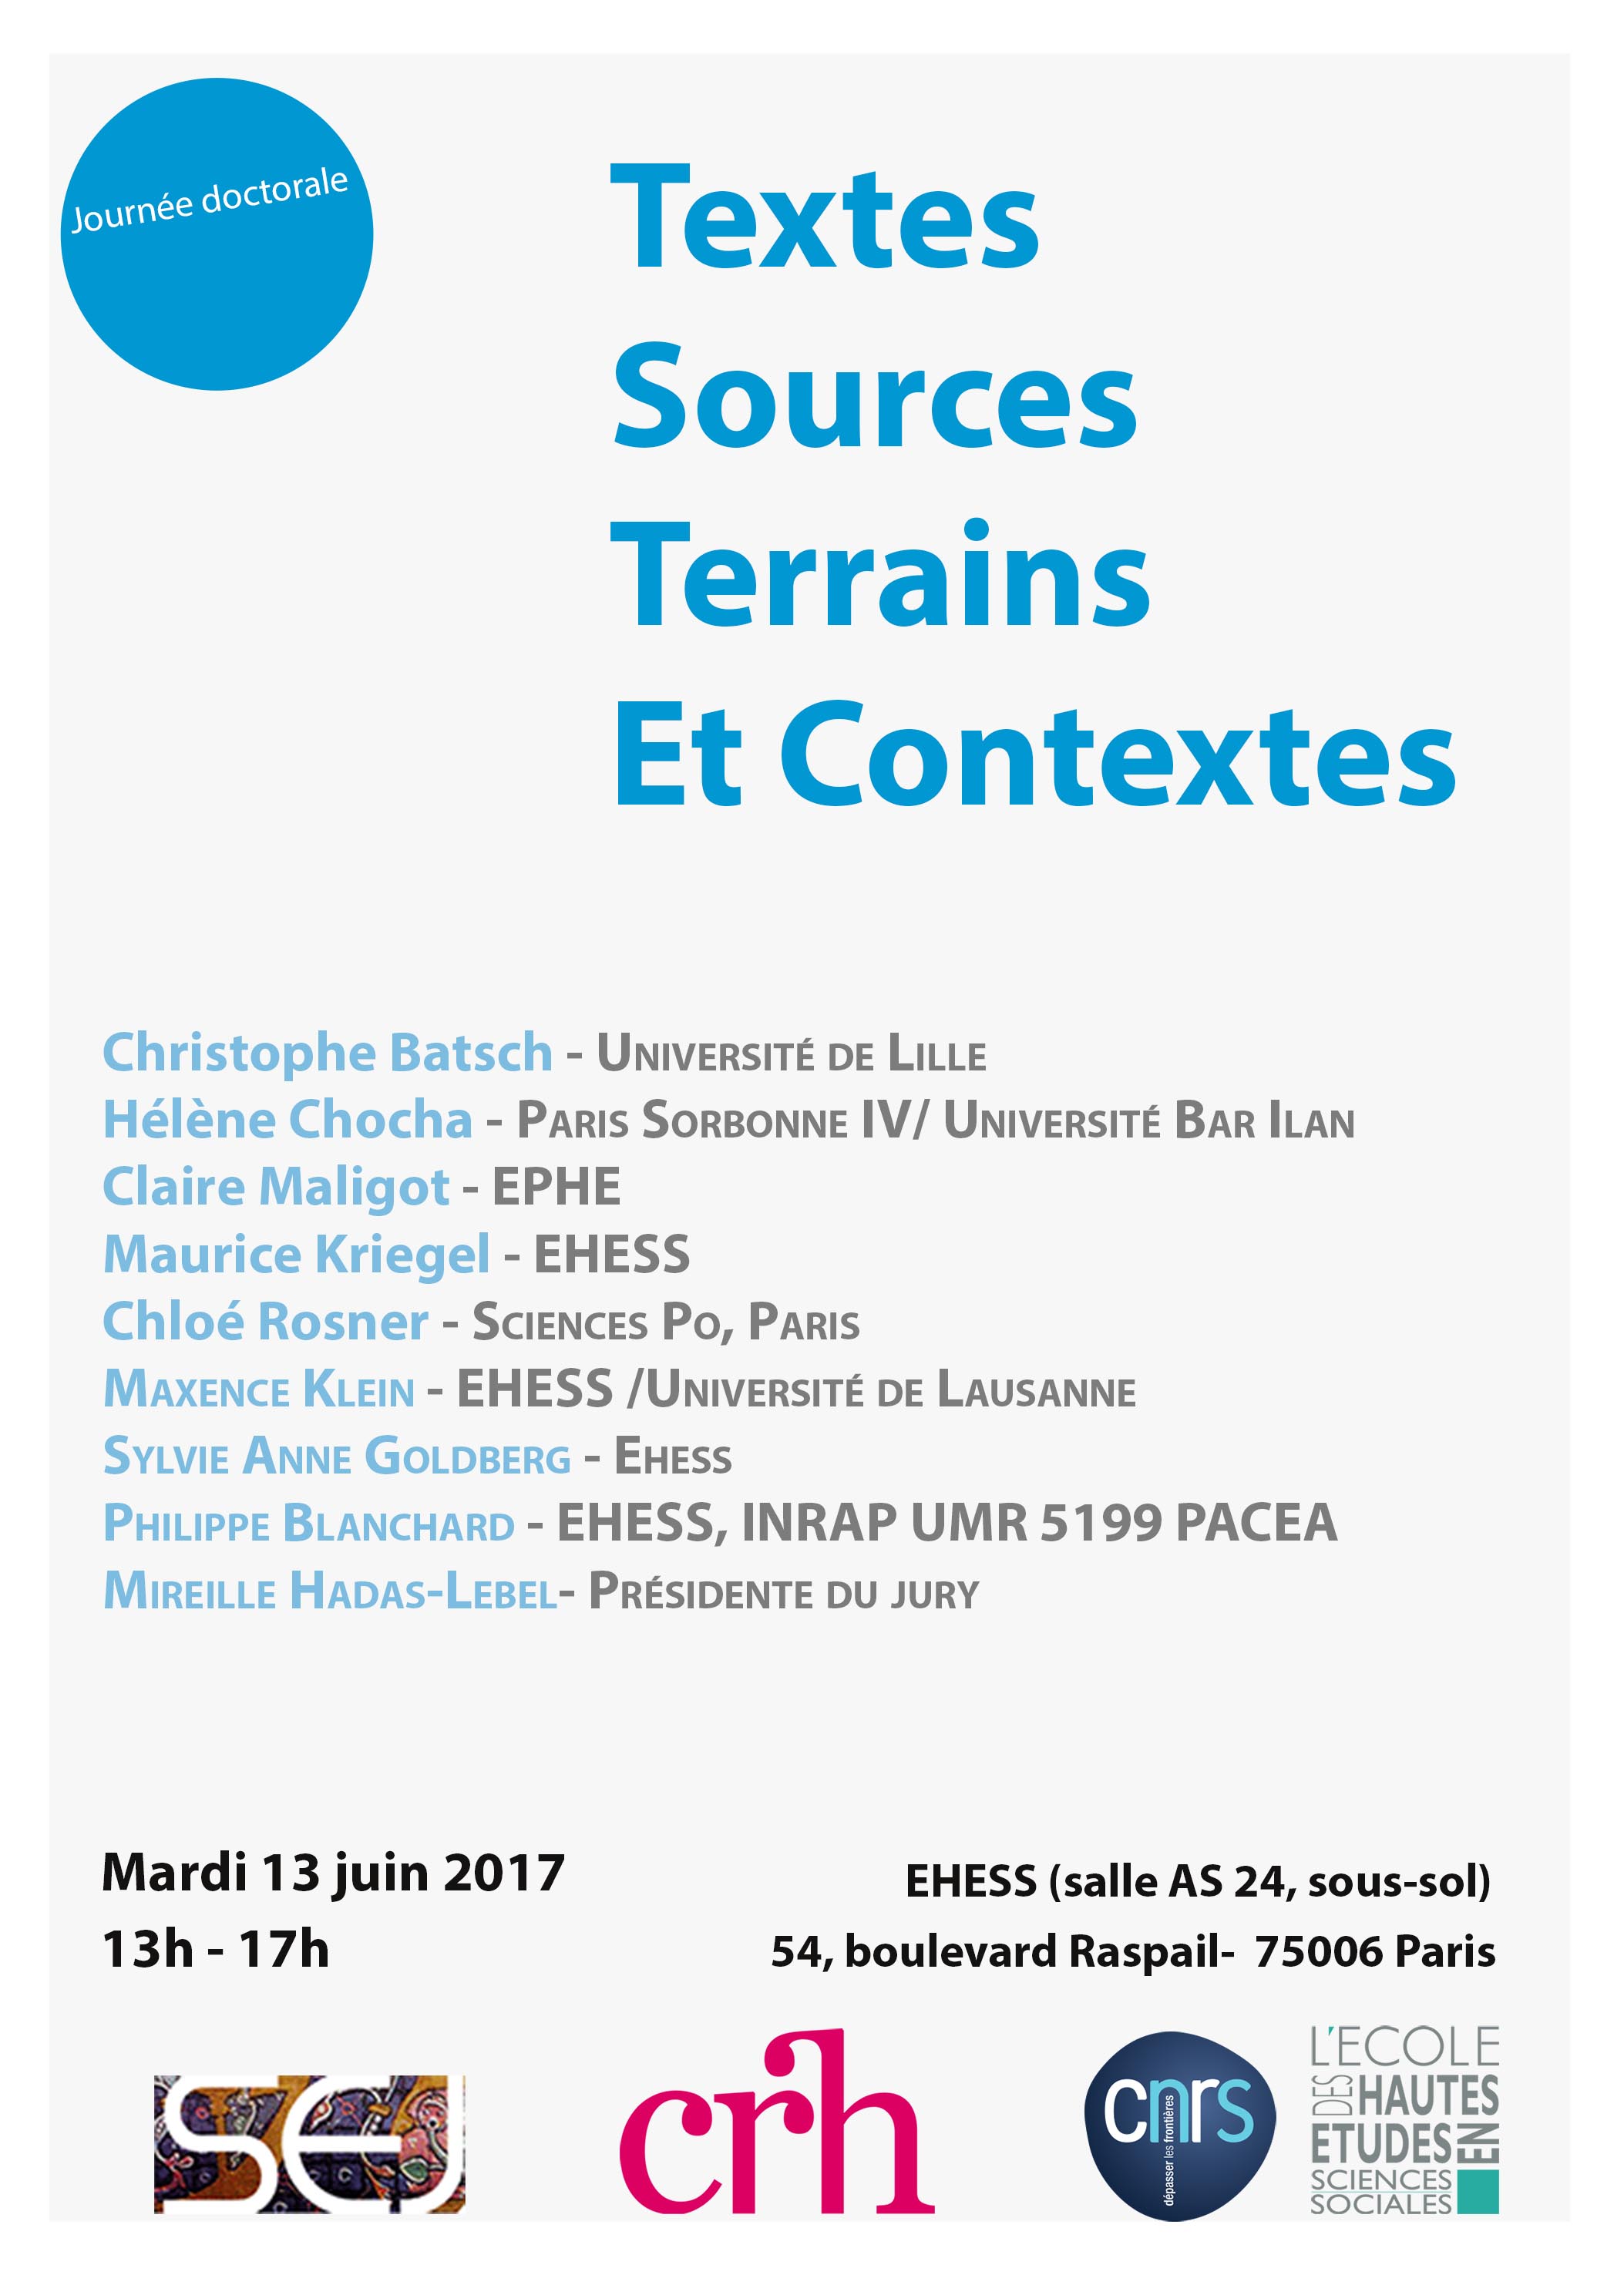 Textes, Sources, Terrains et Contextes